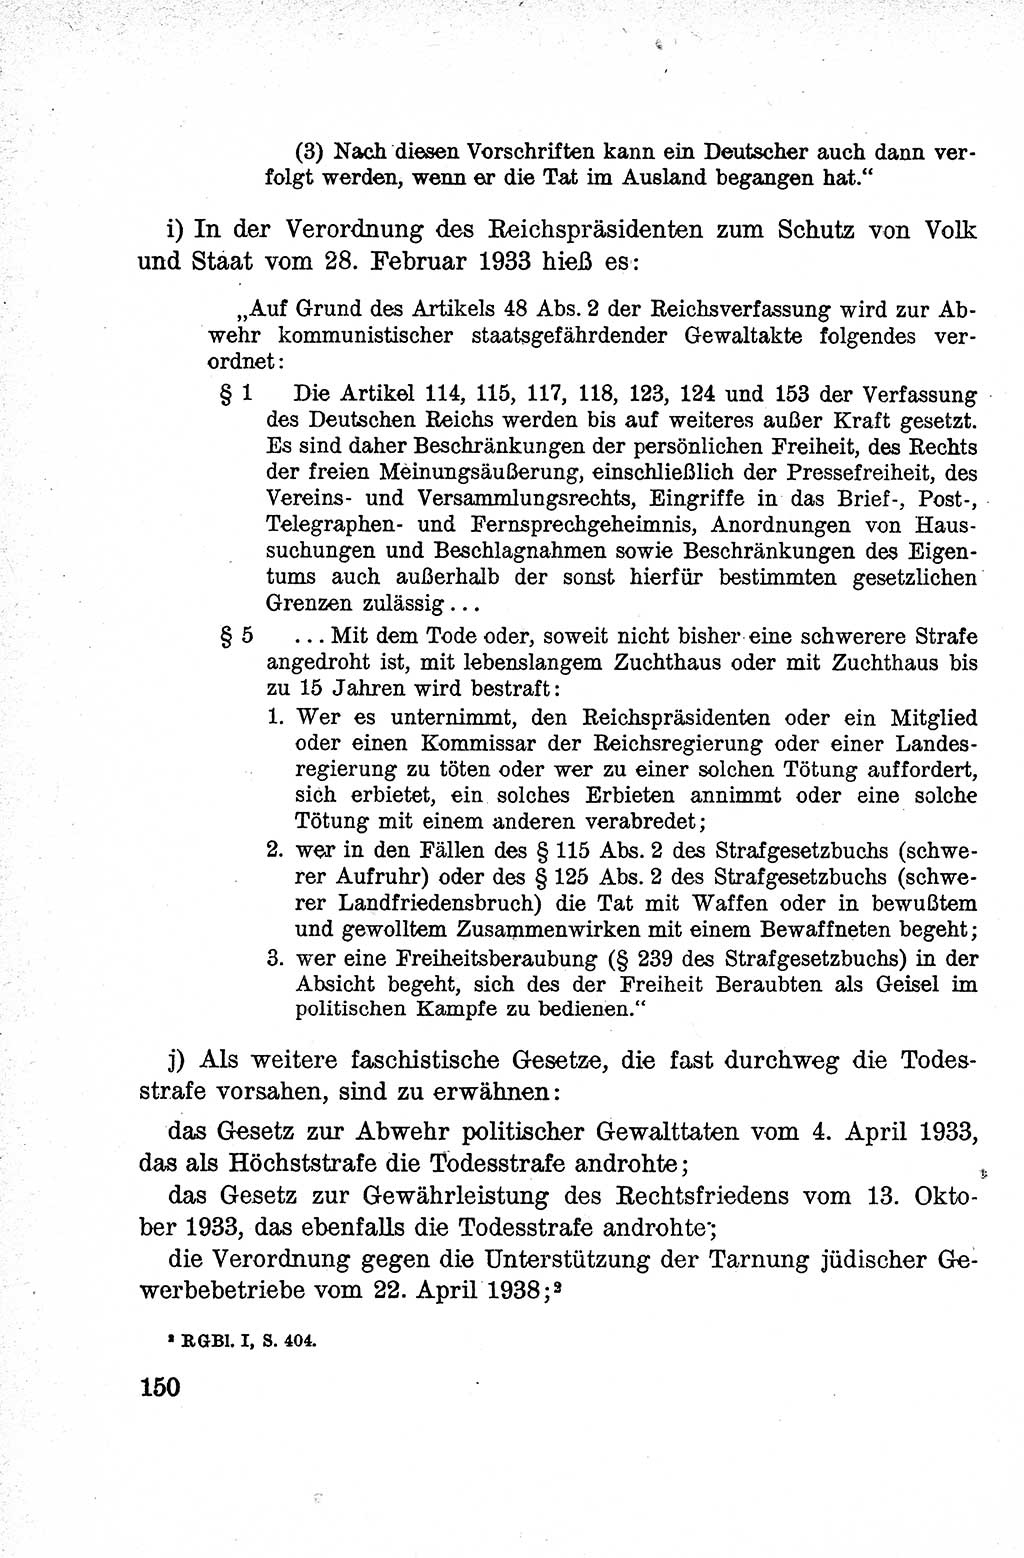 Lehrbuch des Strafrechts der Deutschen Demokratischen Republik (DDR), Allgemeiner Teil 1959, Seite 150 (Lb. Strafr. DDR AT 1959, S. 150)